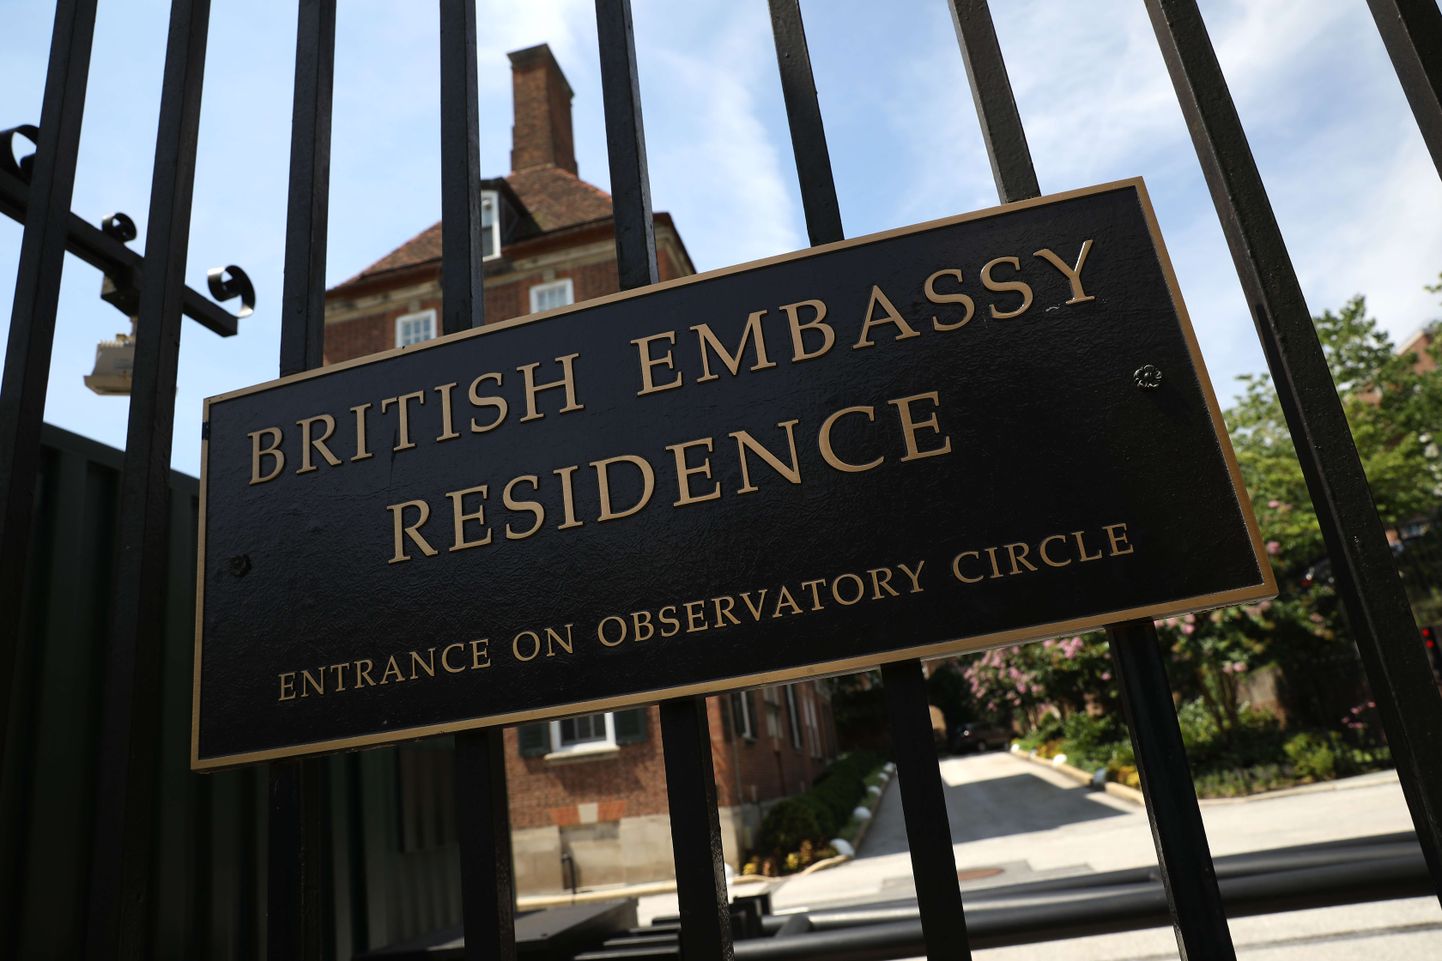 Briti suursaatkond Washingtonis.